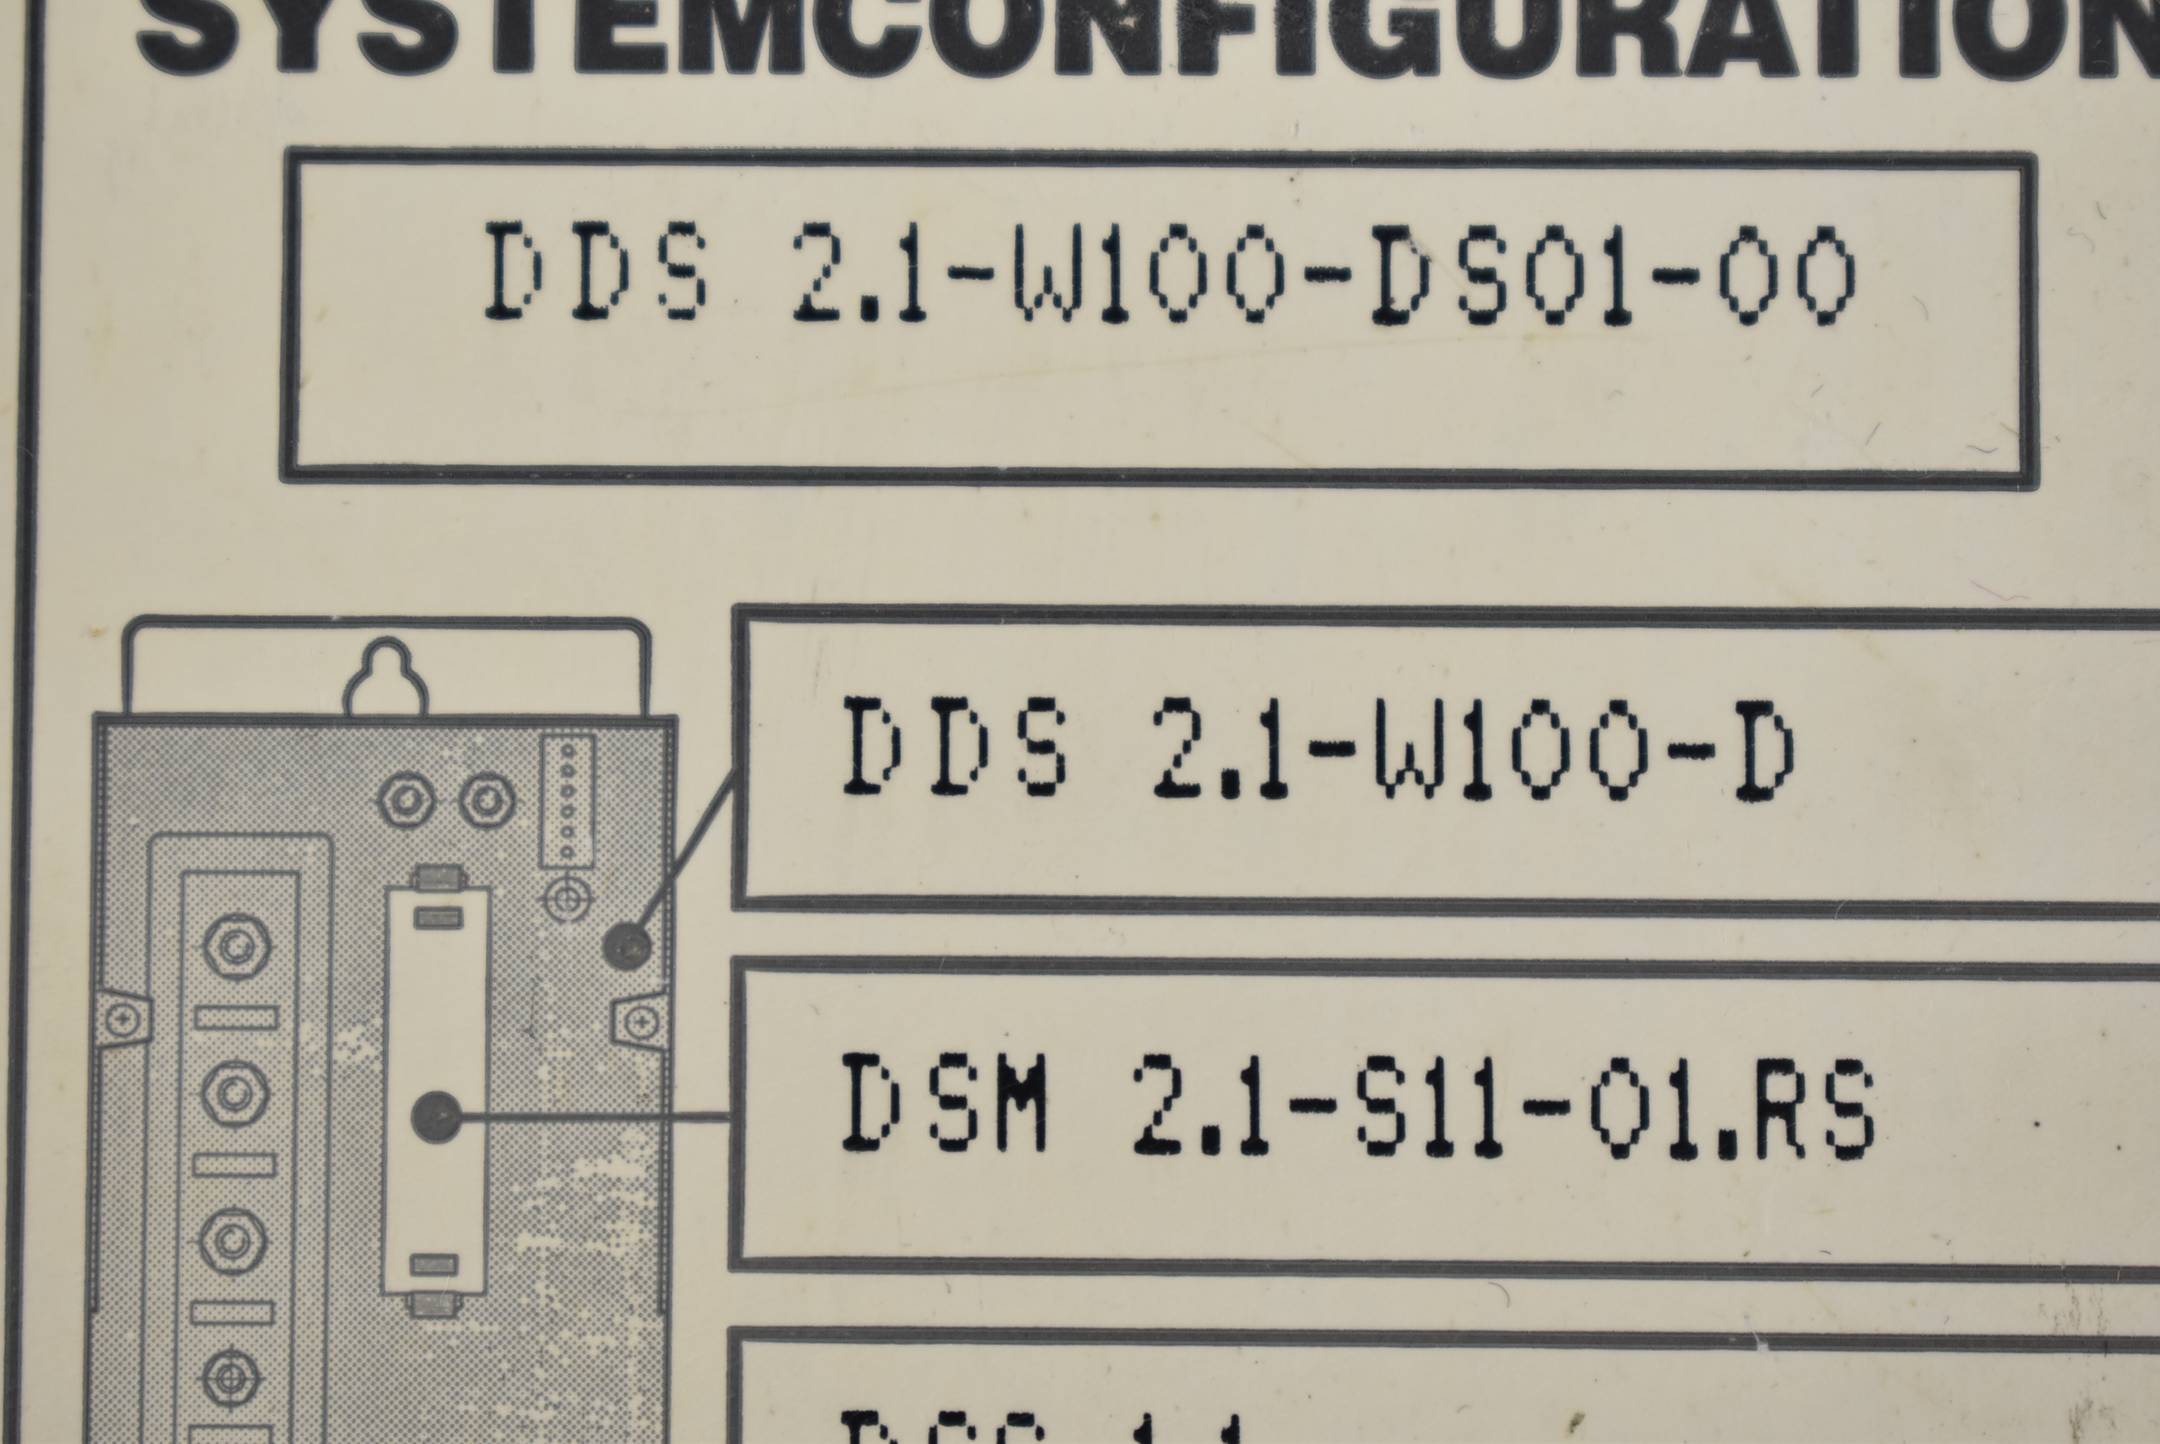 Indramat Servoregler DDS 2.1-W100-DS01-00 ( DDS2.1-W100 ) ohne Konfiguration